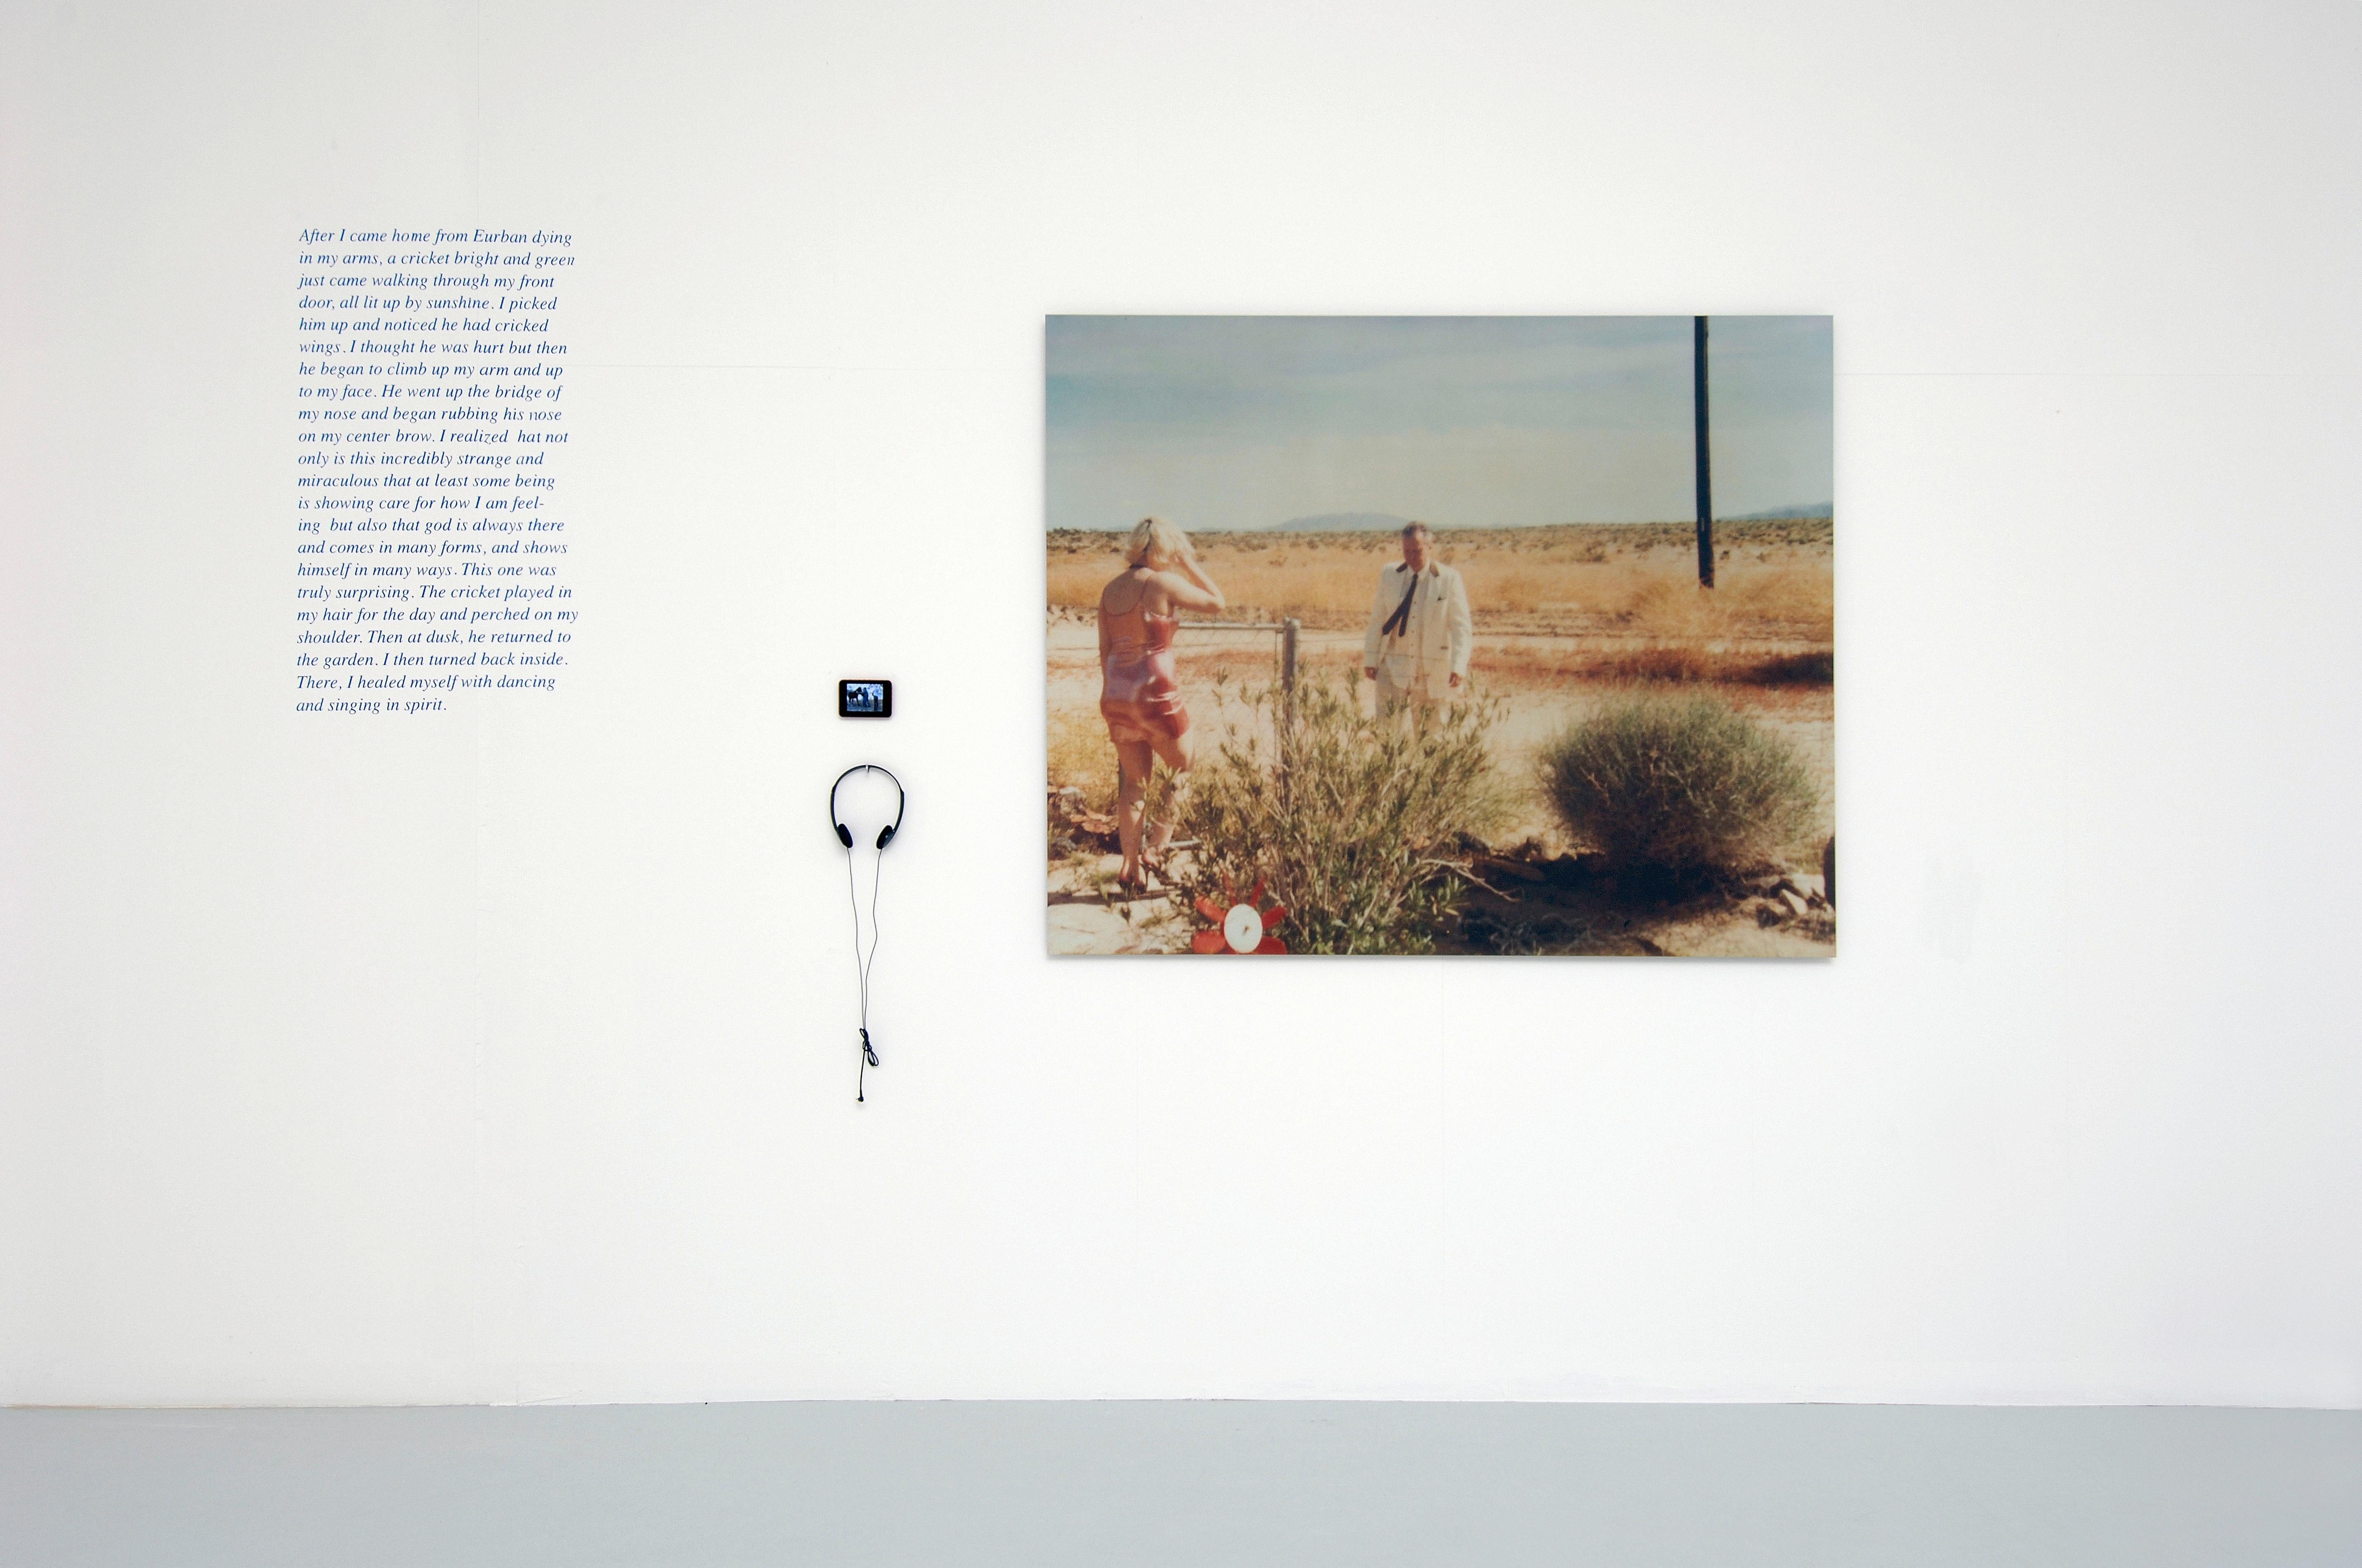 Wonder Valley (29 Palms, CA) - analog, mounted, installation, music, video, text - Photograph by Stefanie Schneider